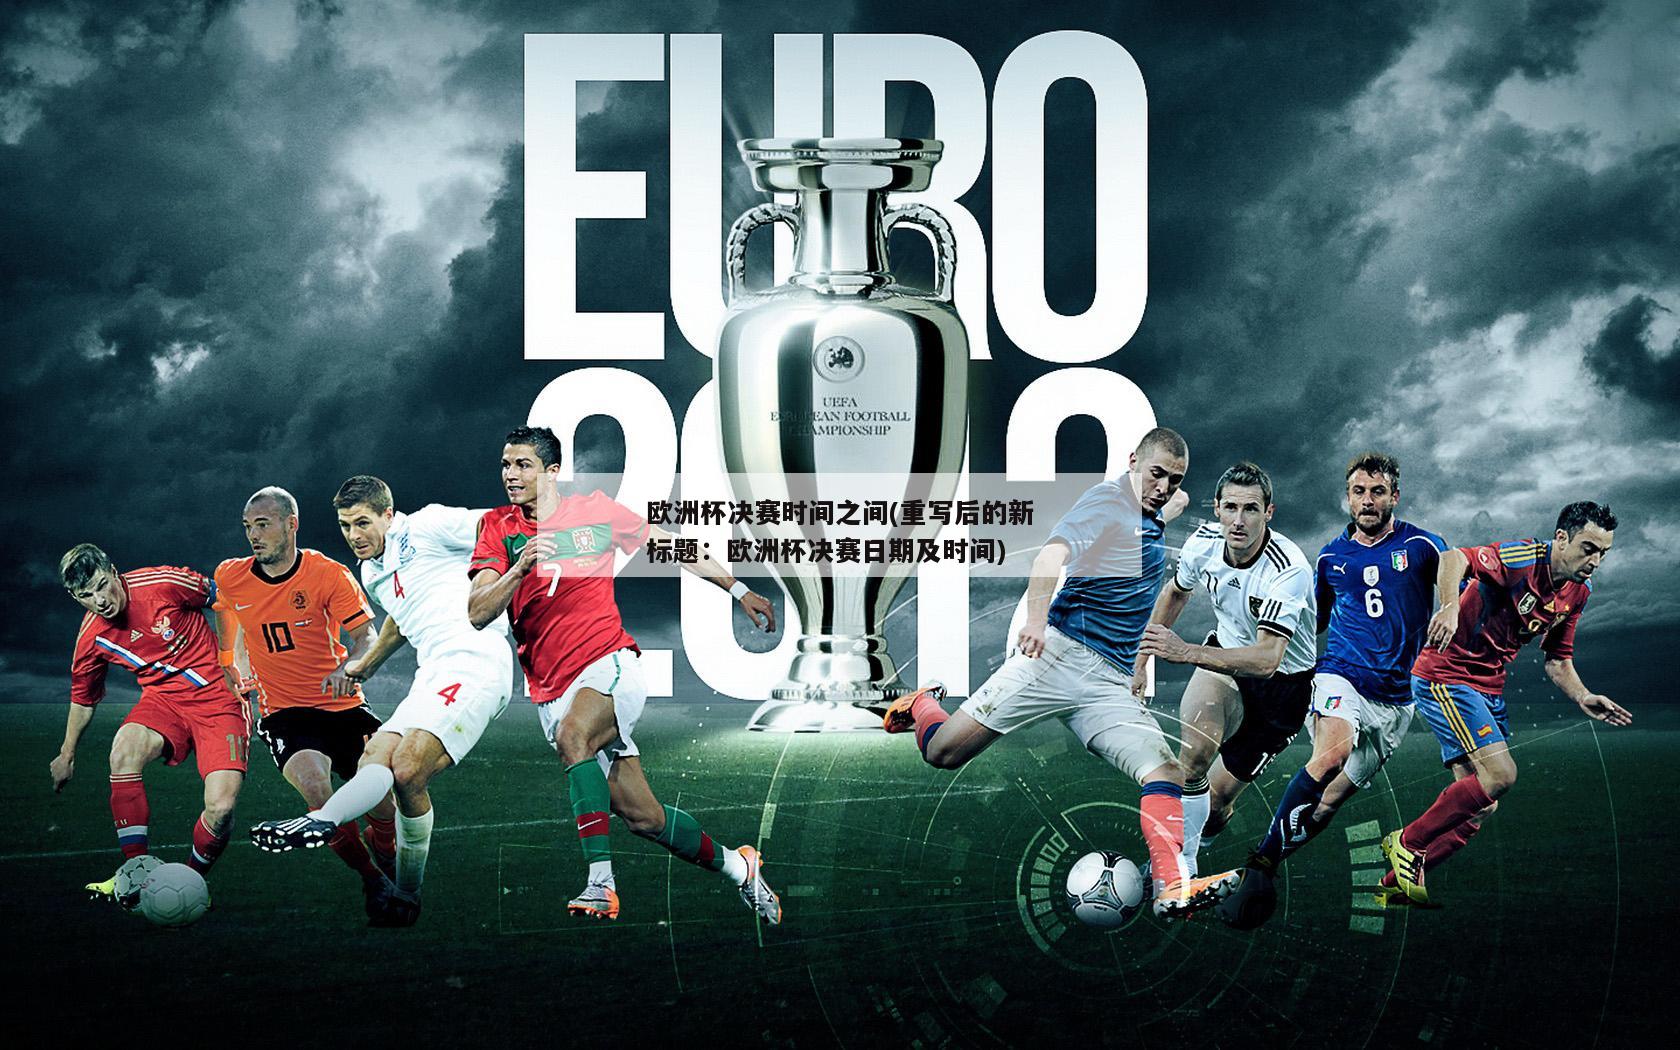 欧洲杯决赛时间之间(重写后的新标题：欧洲杯决赛日期及时间)